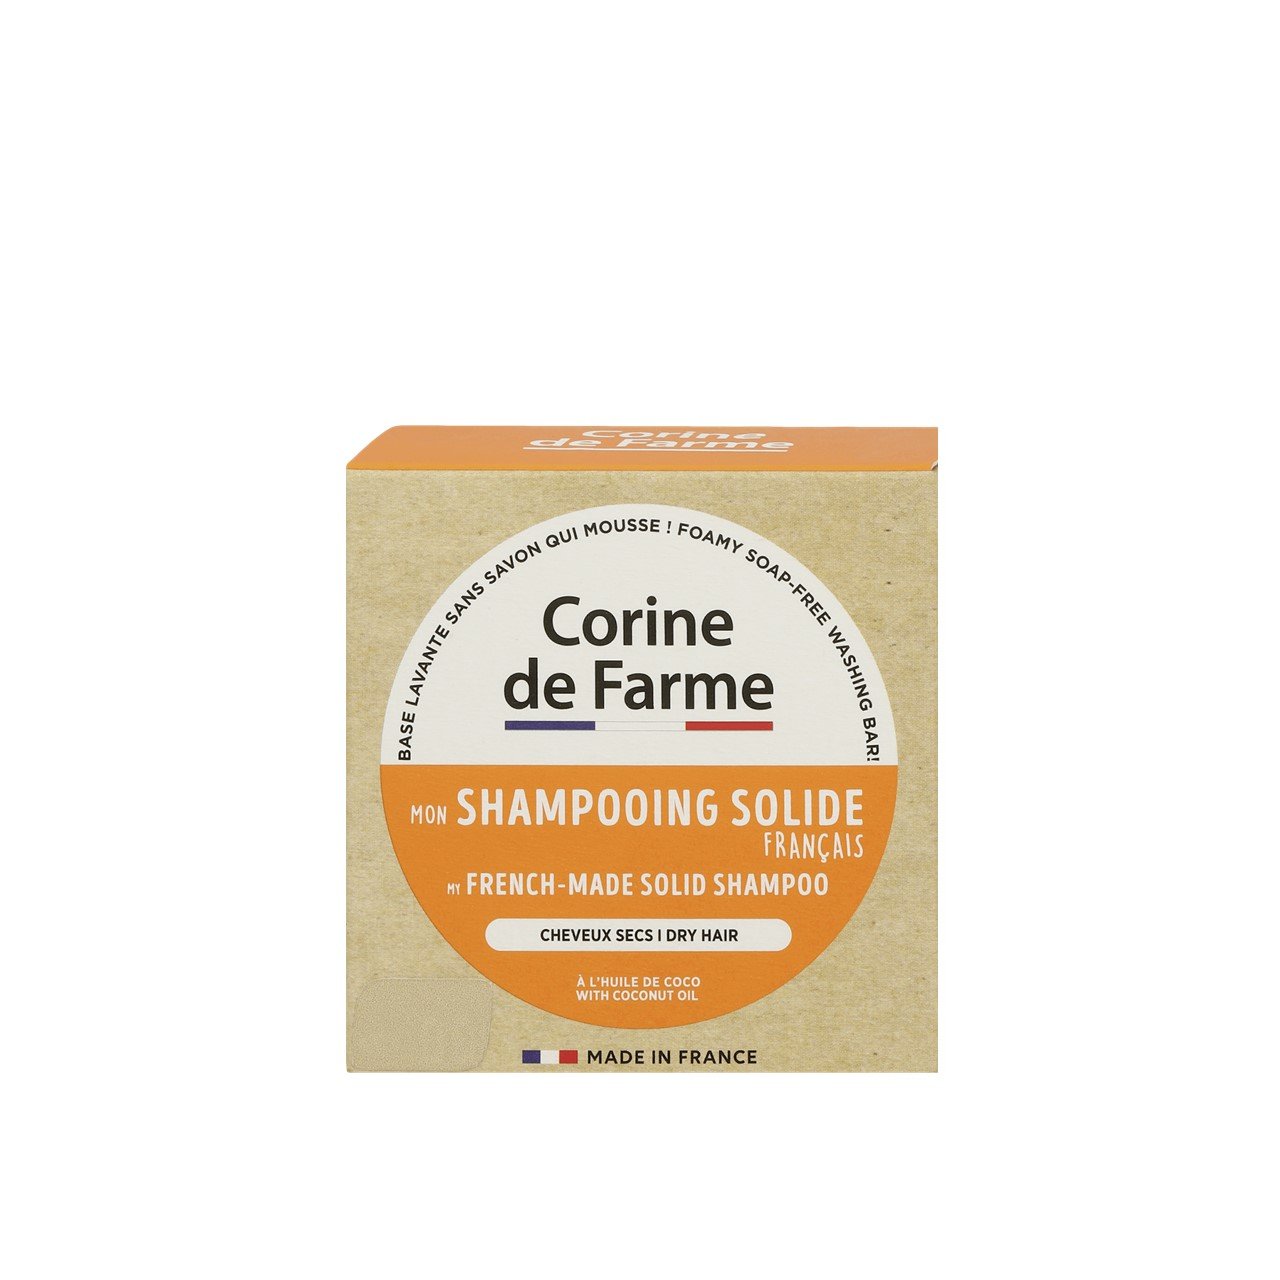 Corine de Farme Solid Shampoo With Coconut Oil 75g (2.64oz)